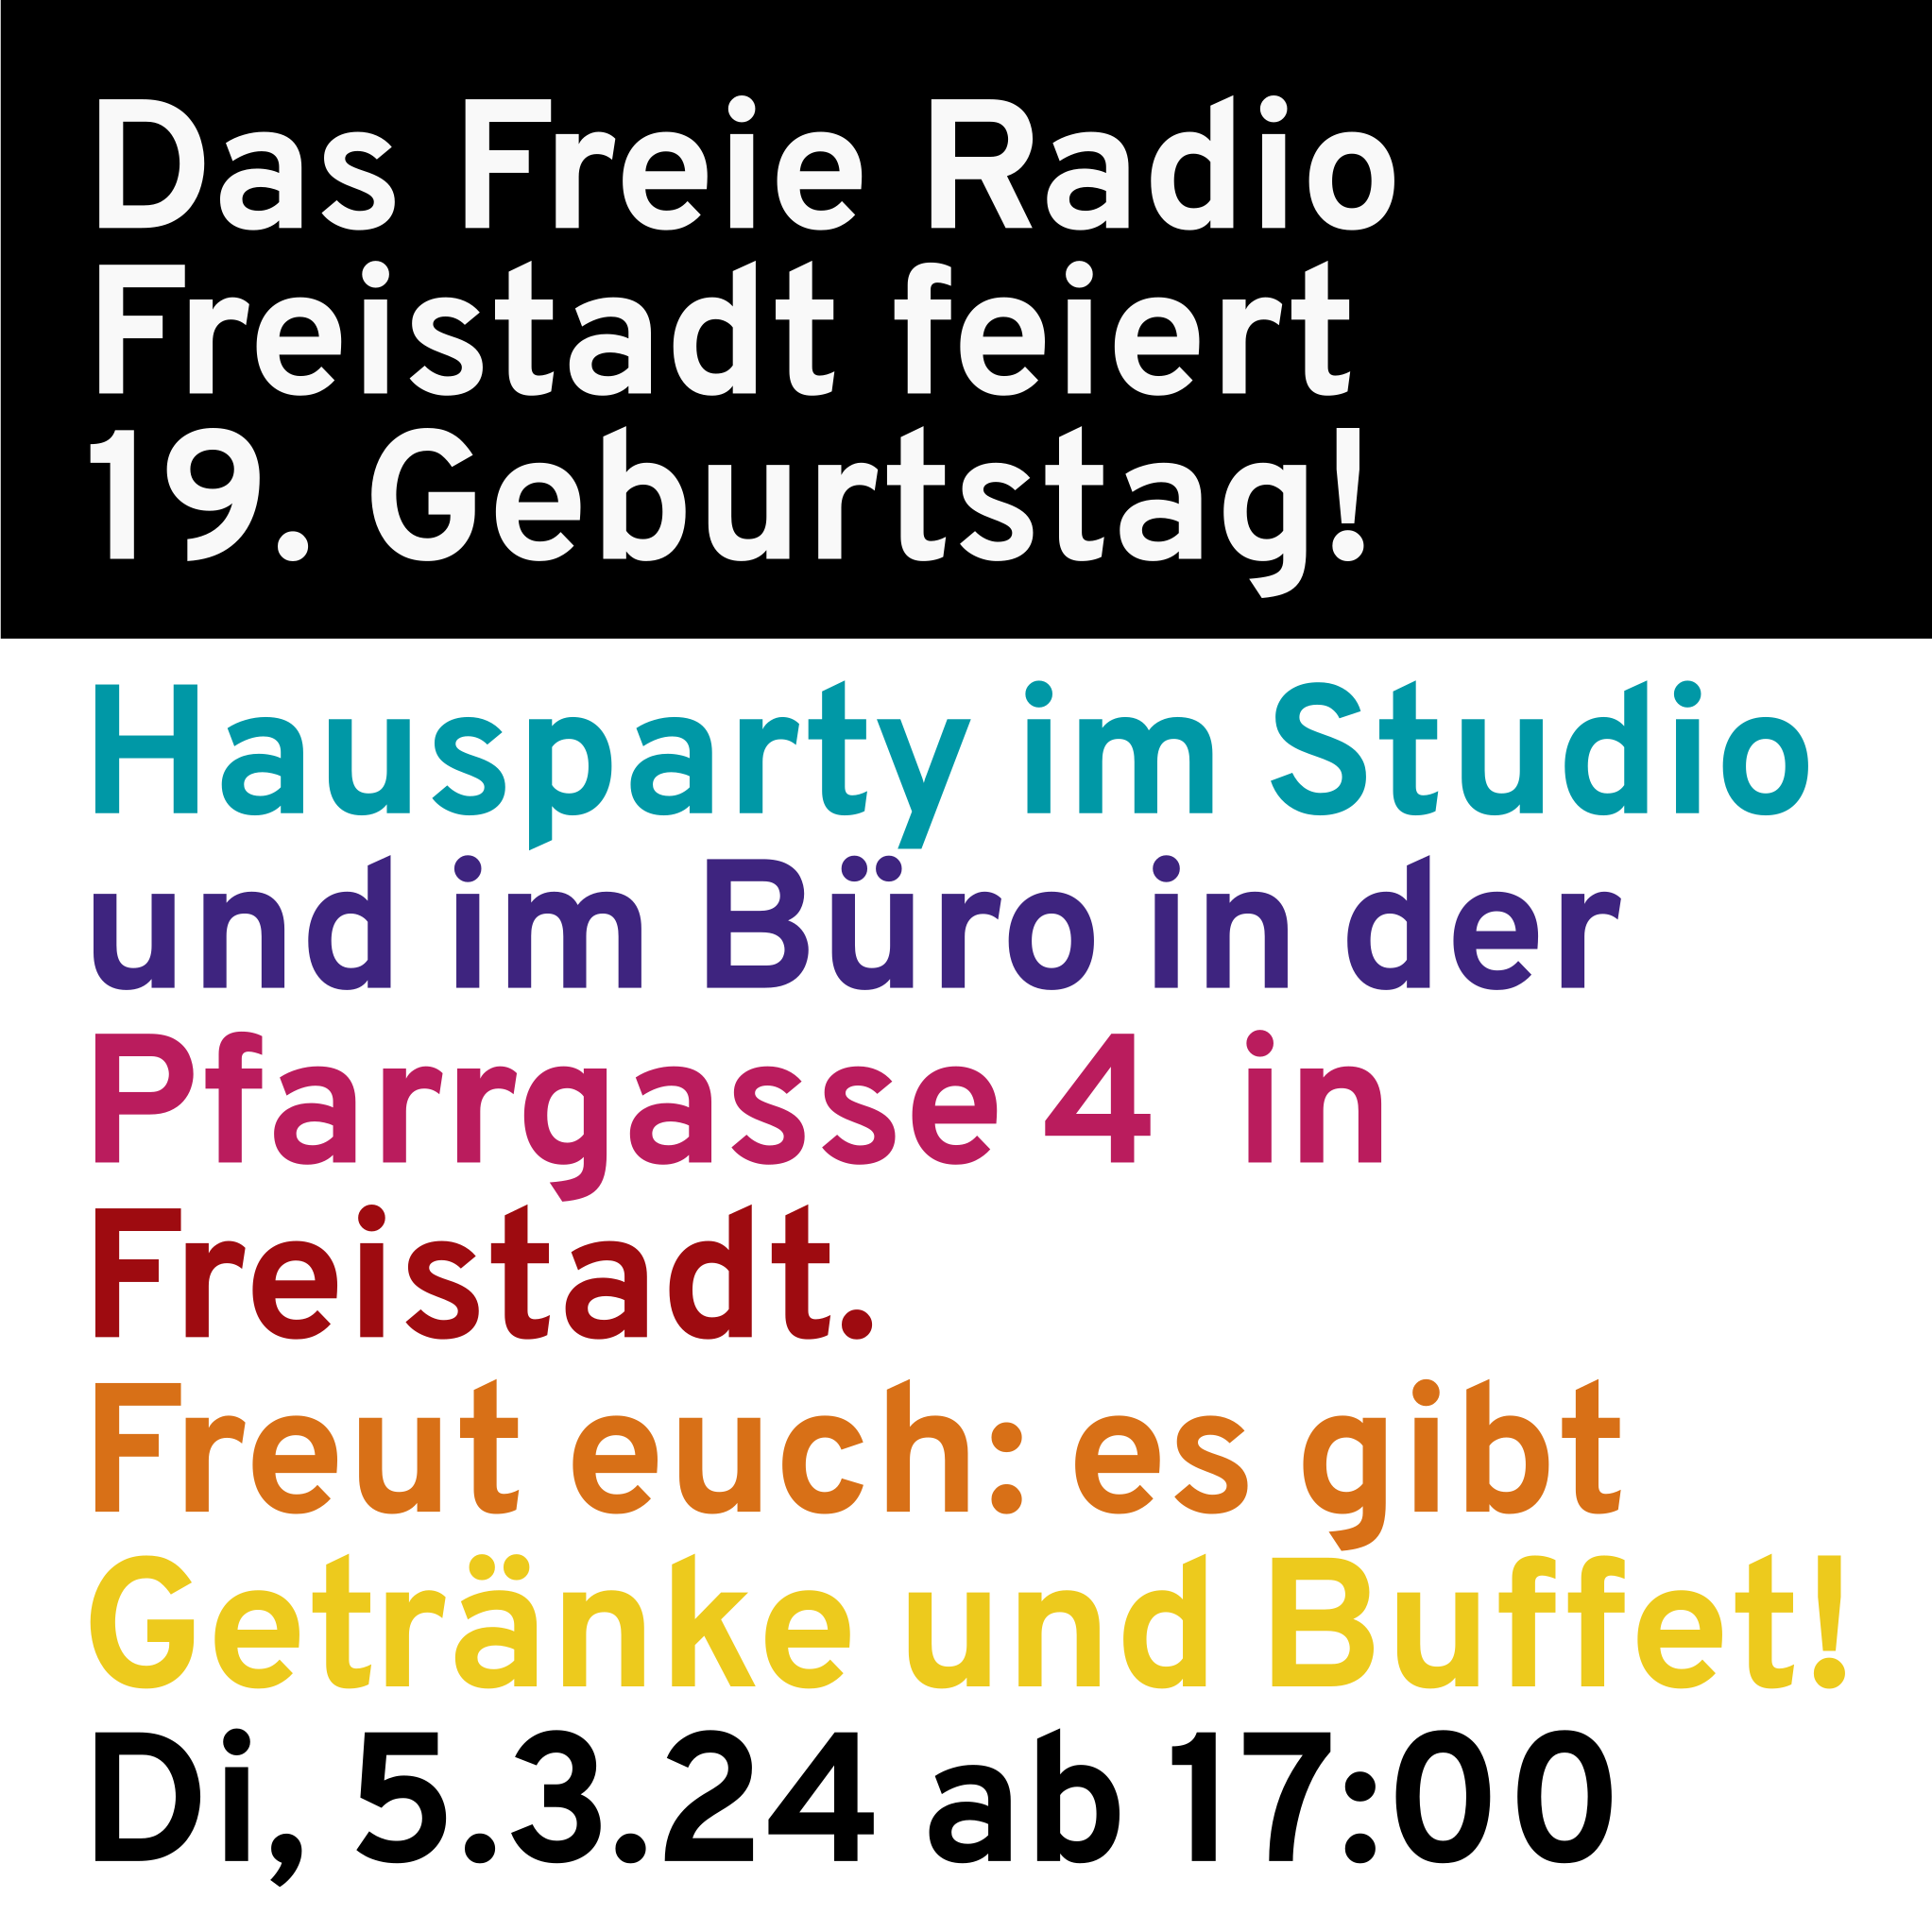 19 Jahre Freies Radio Freistadt